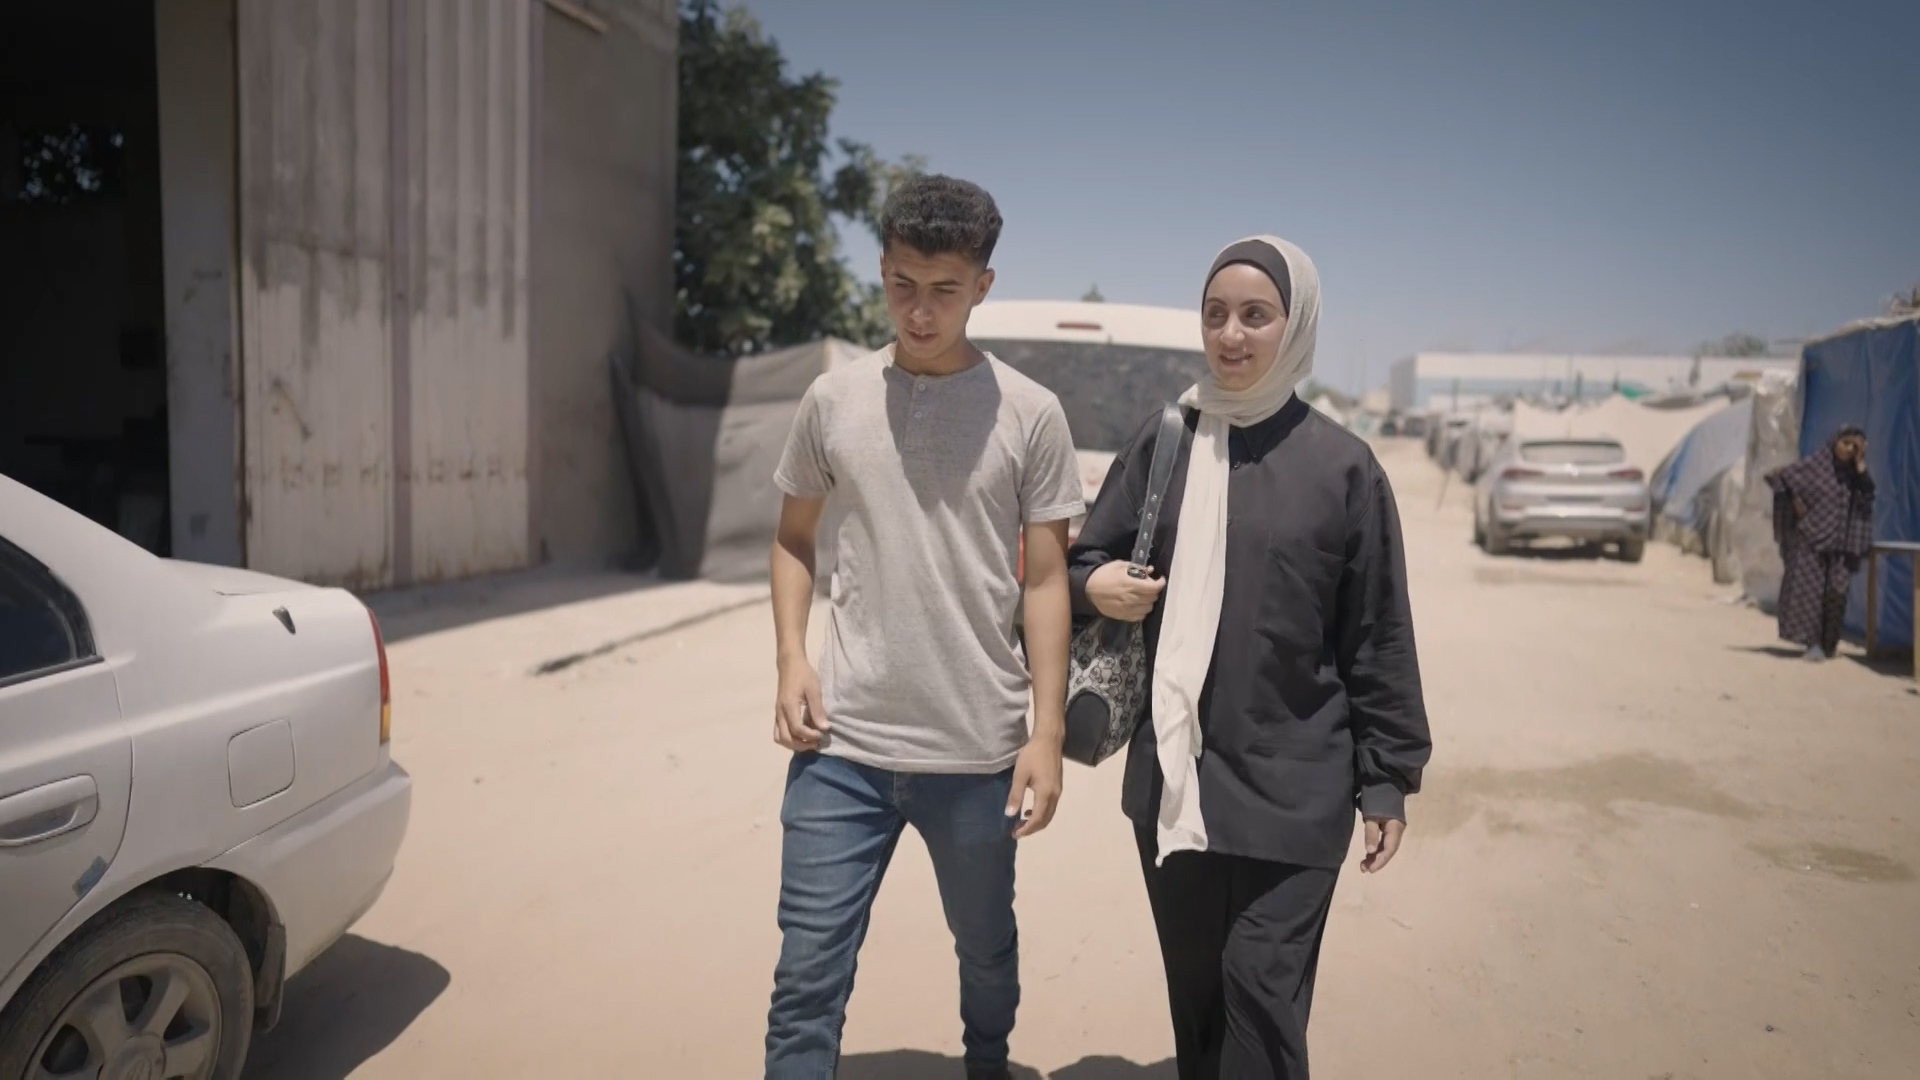 تعرف على قصة لينا وإجبارها على النزوح وحرمانها من عائلتها في غزة | التقارير الإخبارية – البوكس نيوز